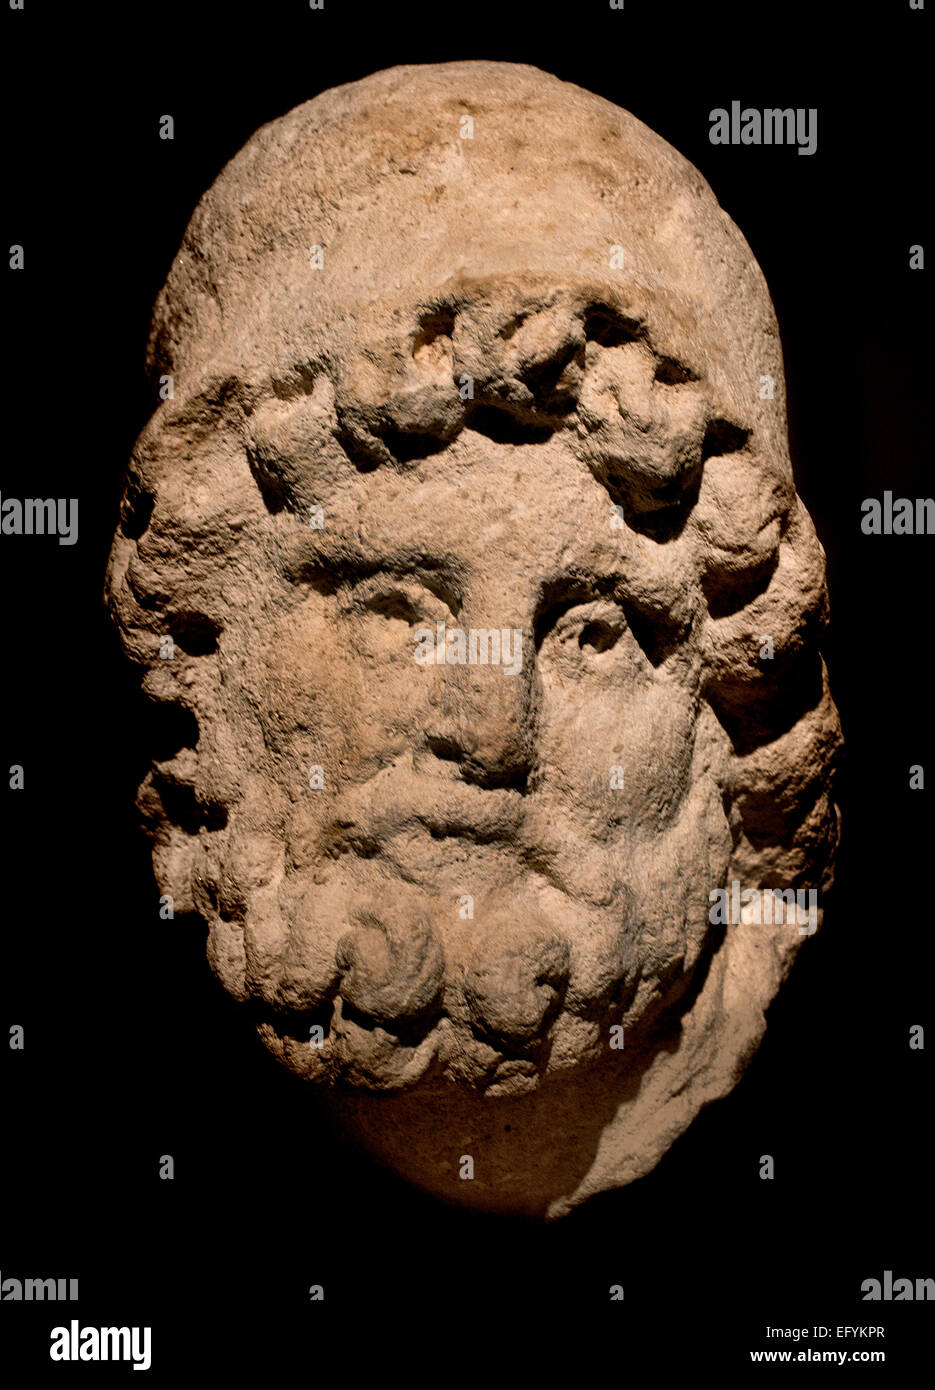 Énée est le fils de marin : Blouse, et Vénus. Il était un cousin du roi Priam de Troie, et fut le chef de l'Dardanian Troy alliés durant la guerre de Troie. Musée romain germanique Cologne Allemagne Banque D'Images